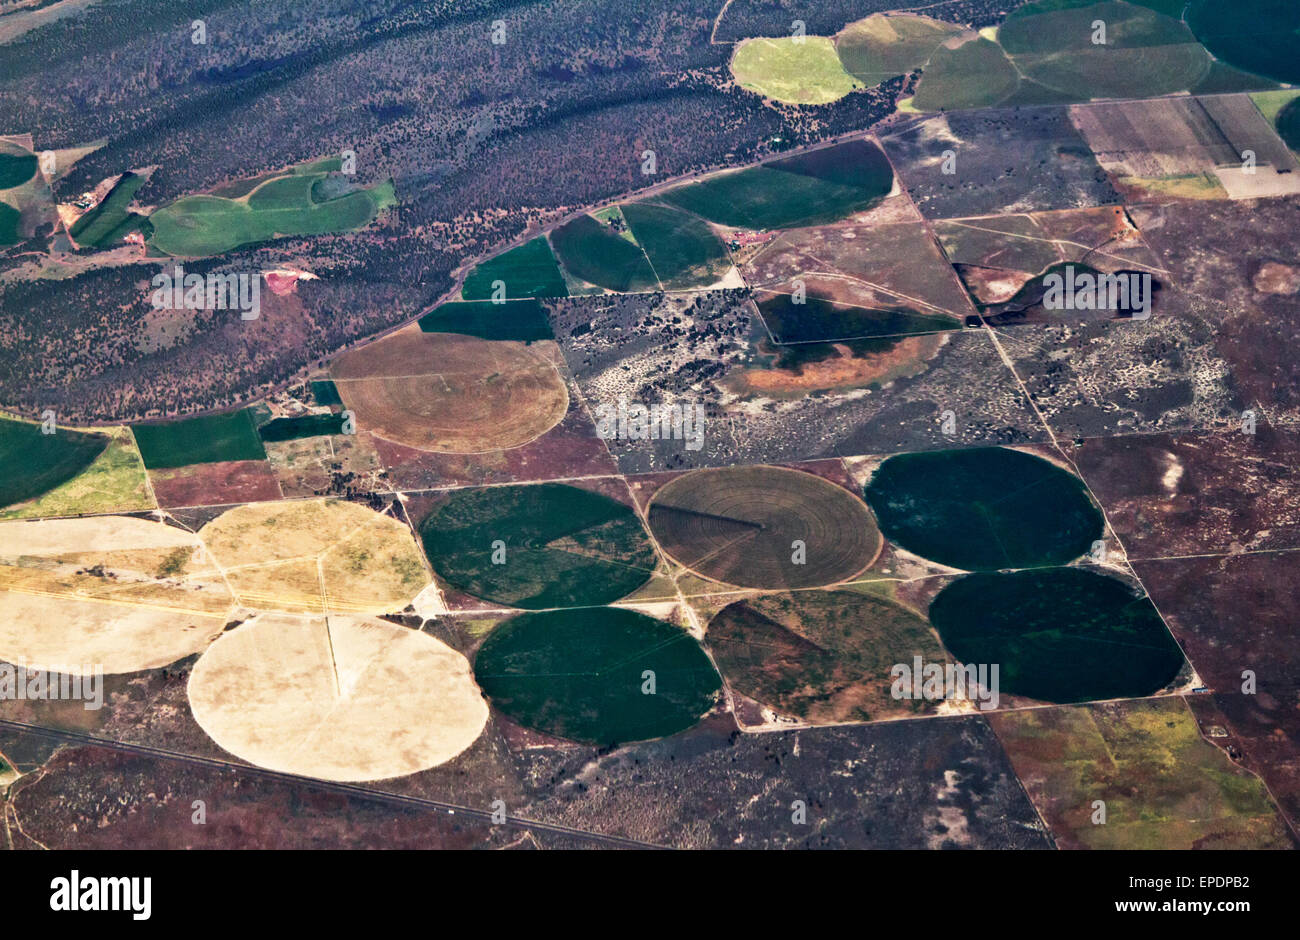 Farming circles in Central California Stock Photo